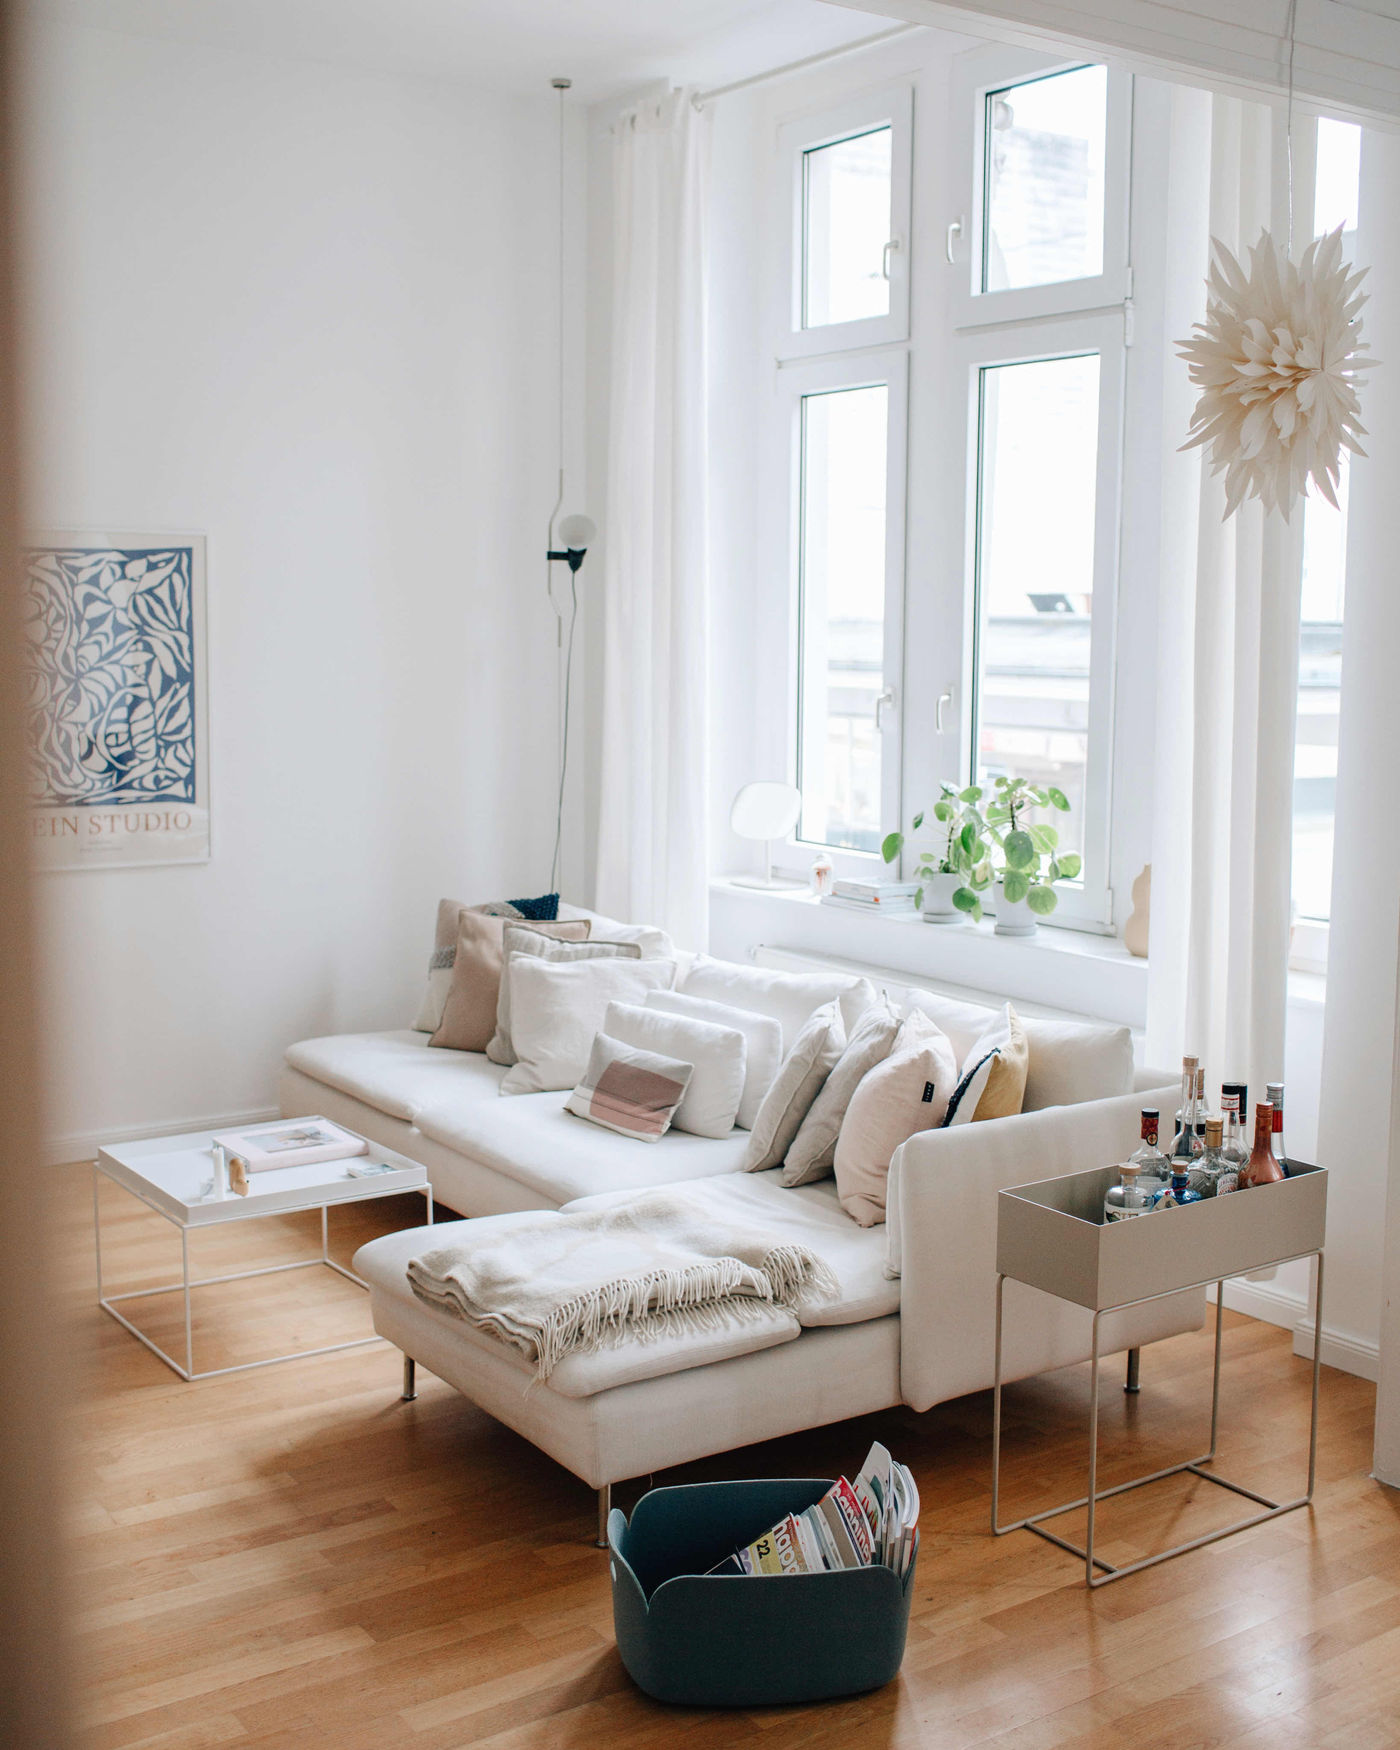 Unsere besten Auswahlmöglichkeiten - Finden Sie hier die Ikea möbel wohnzimmer Ihrer Träume